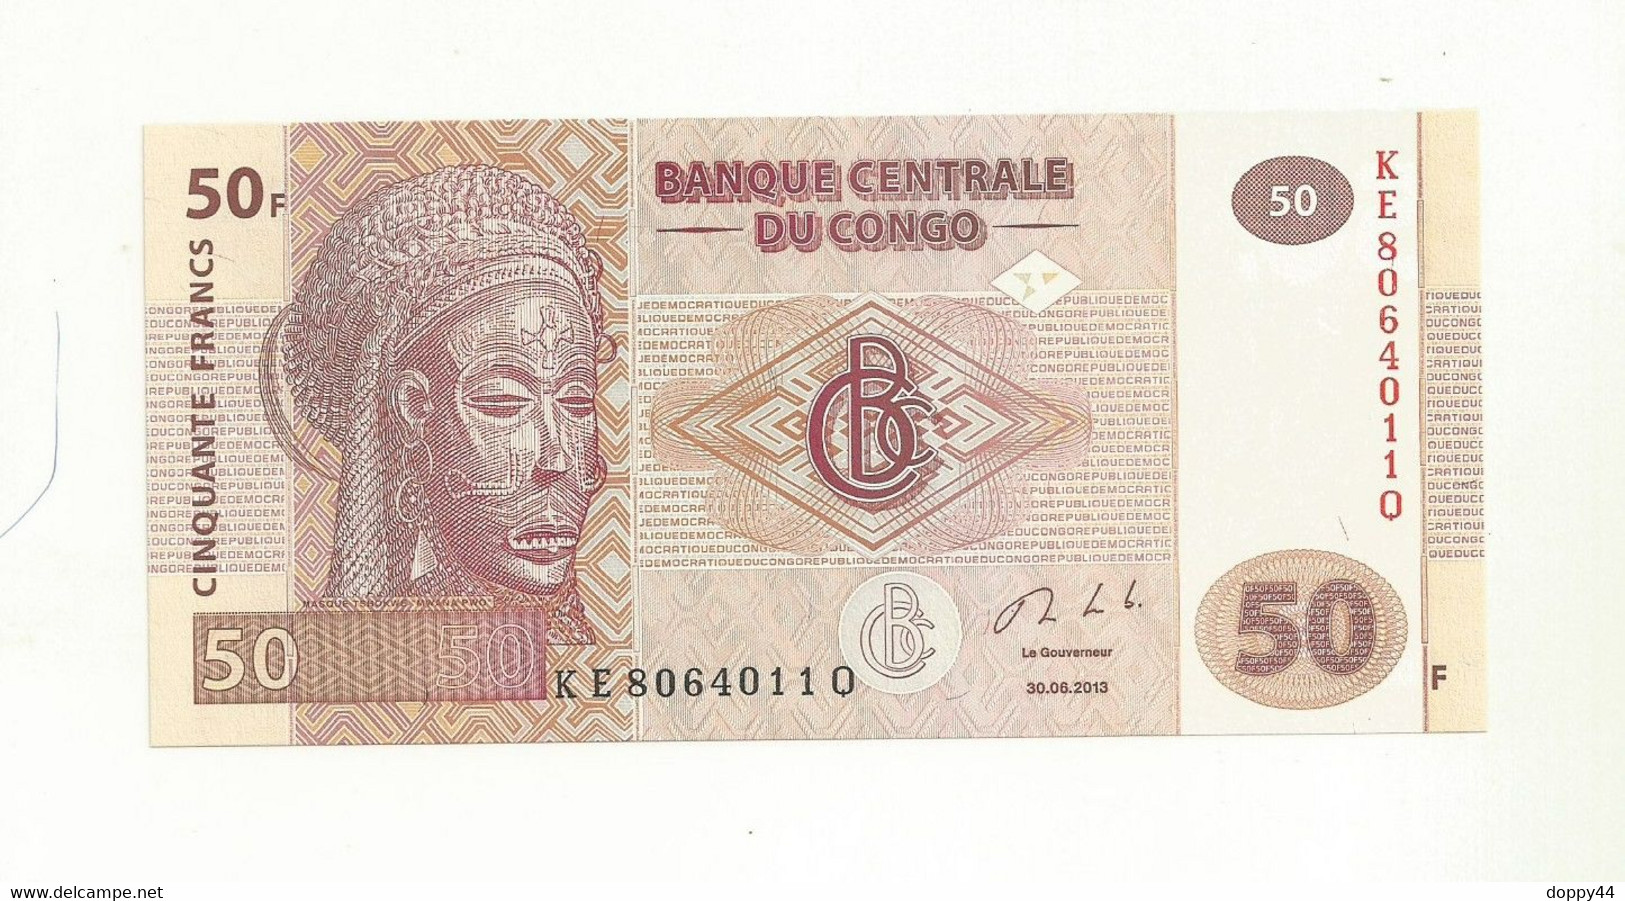 BILLET NEUF BANQUE CENTRALE DU CONGO 50 FRANCS EMIS EN 2013 SUPERBE. - Republiek Congo (Congo-Brazzaville)